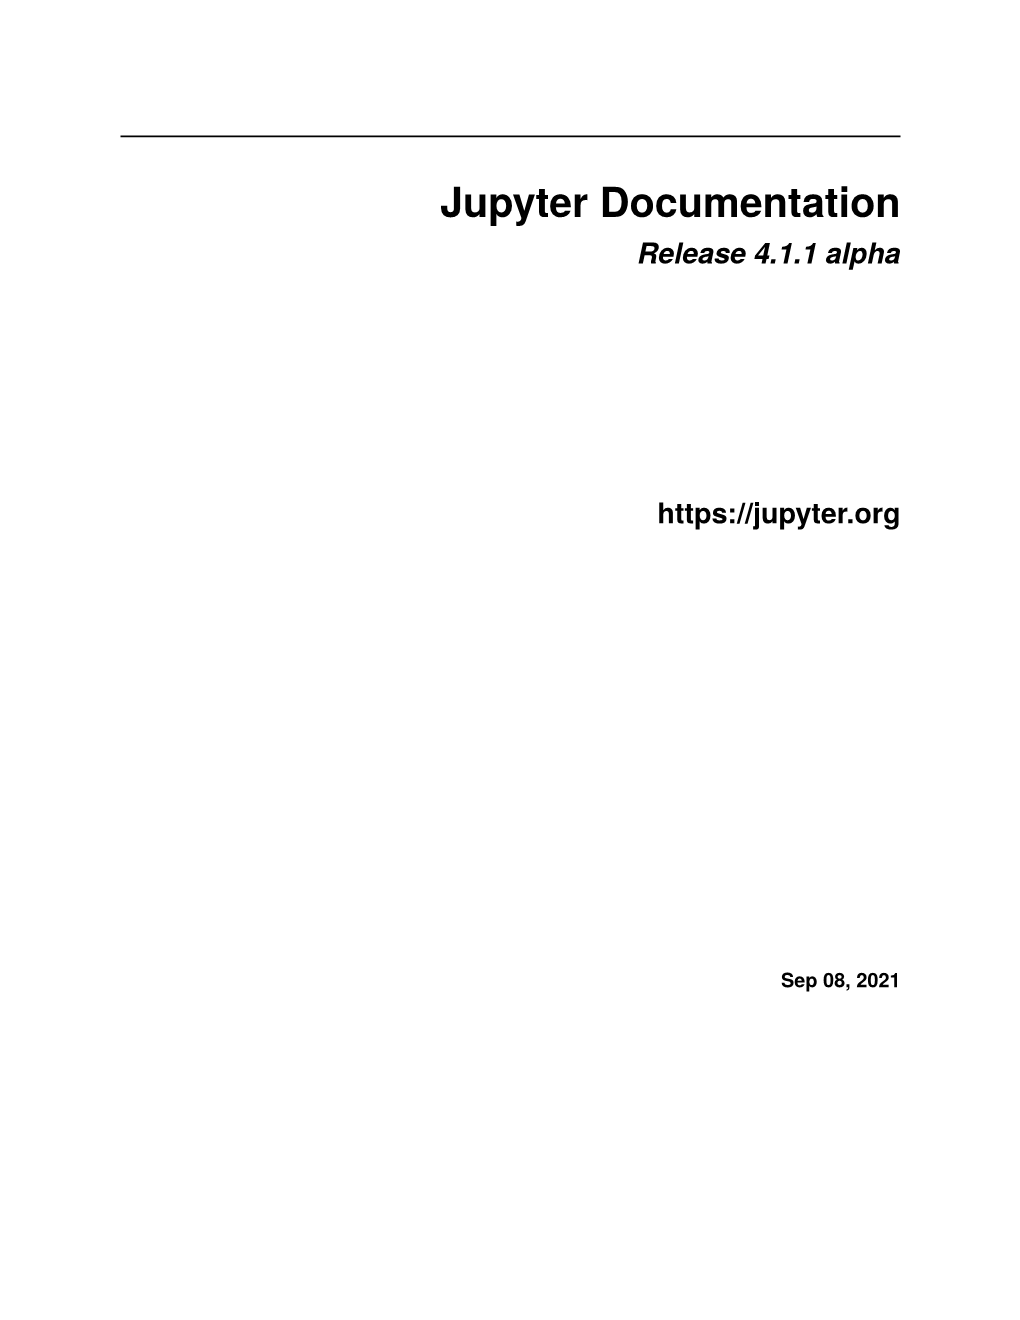 Jupyter Documentation Release 4.1.1 Alpha